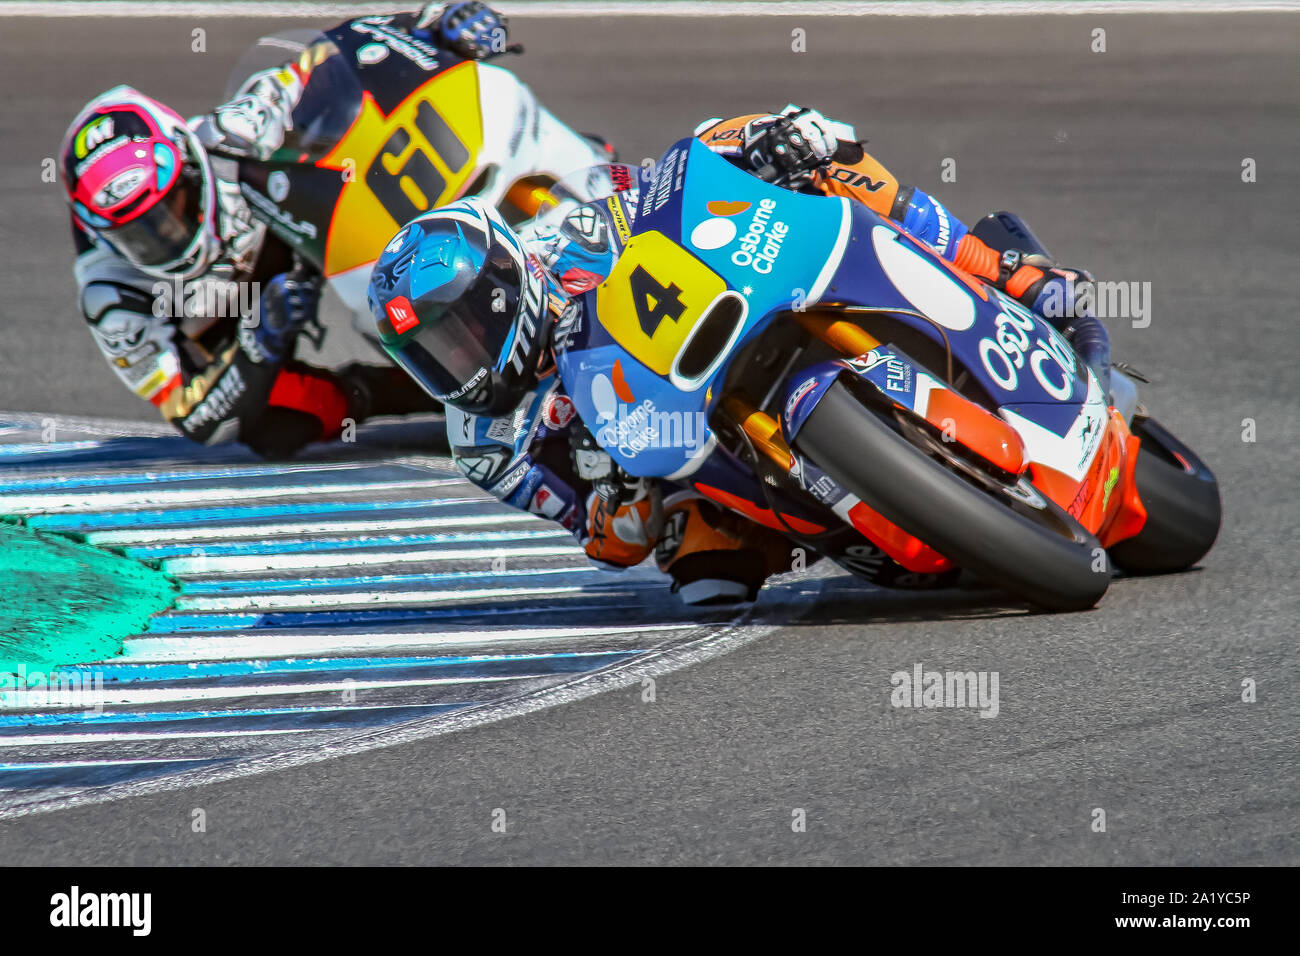 Moto2 riders, Hector Garzo # 4, Alessandro Zaccone # 61 on race Stock Photo